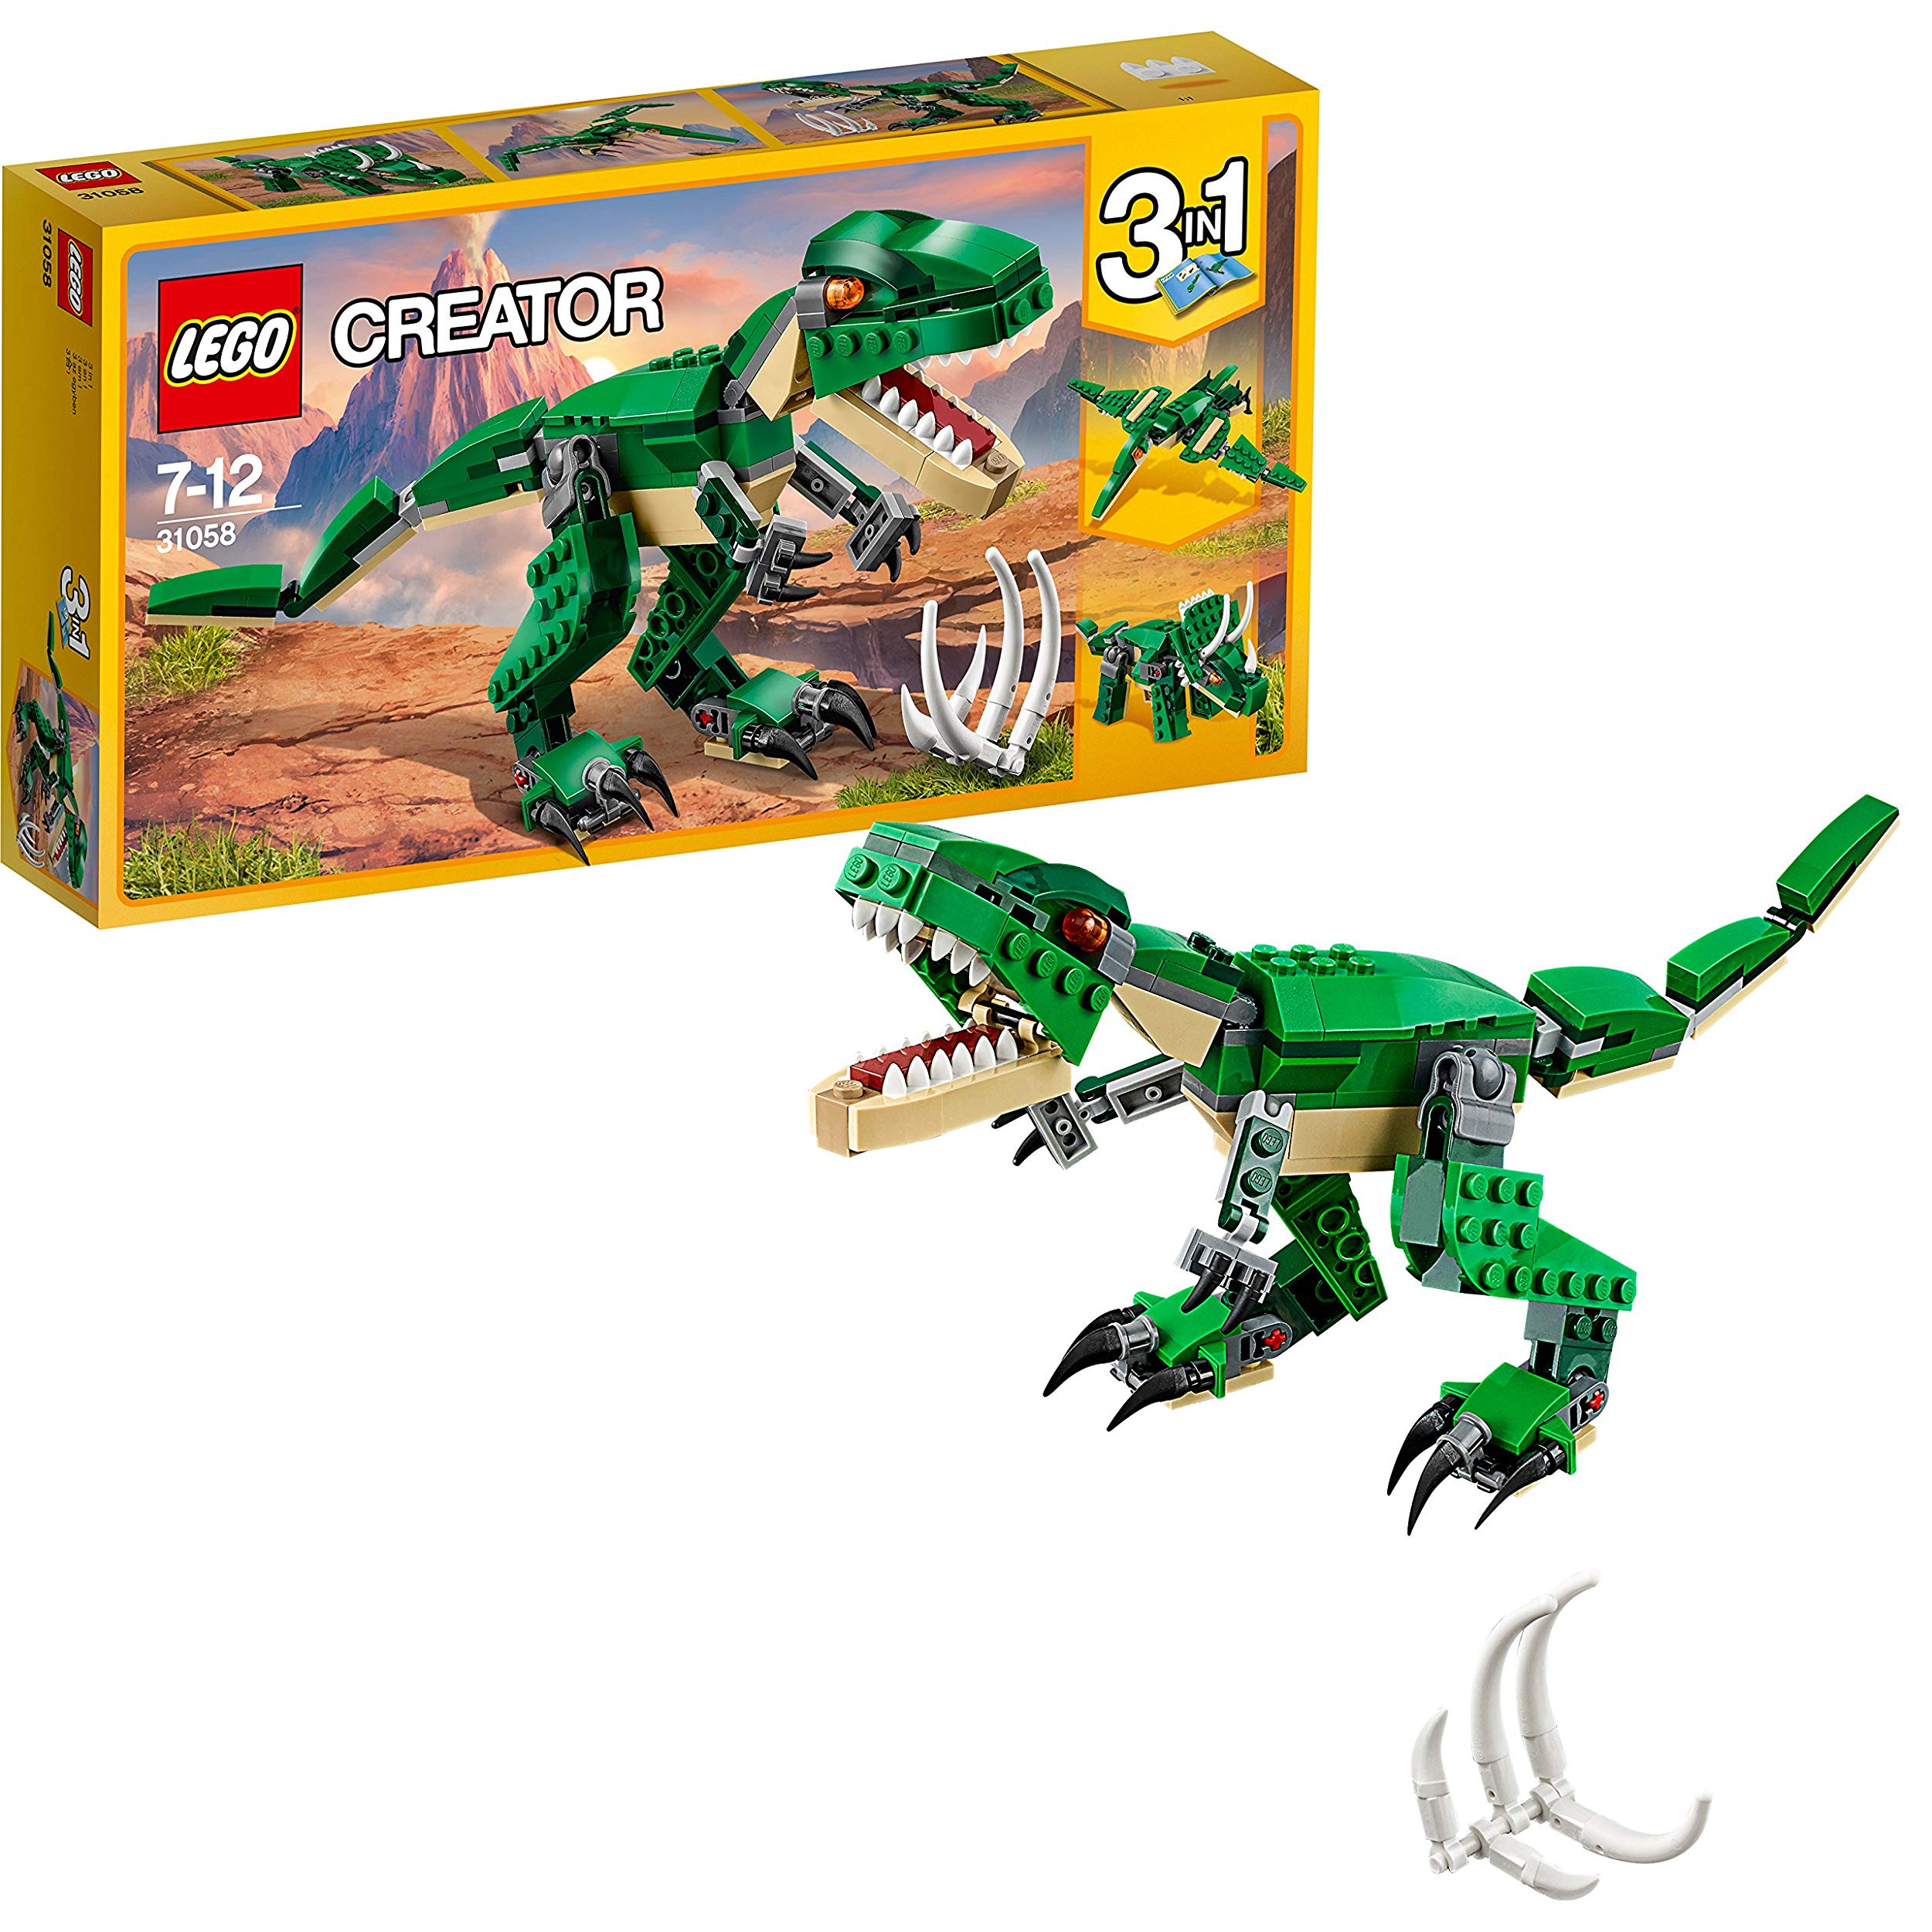 Lego Dinosaur Toy